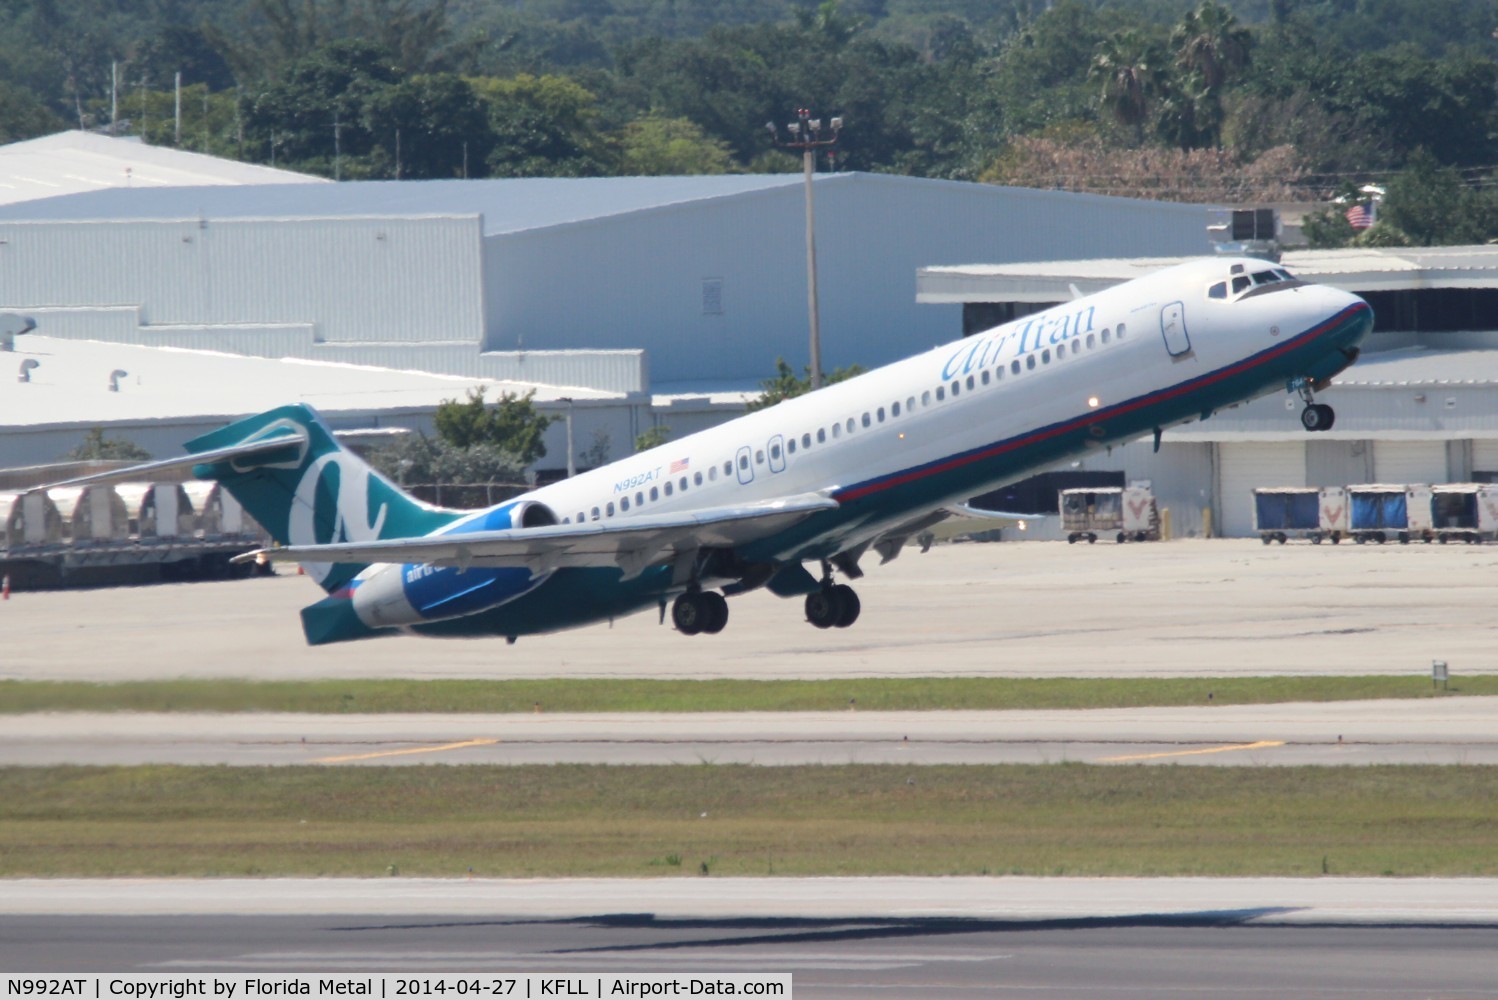 N992AT, 2002 Boeing 717-200 C/N 55136, FLL spotting 2014